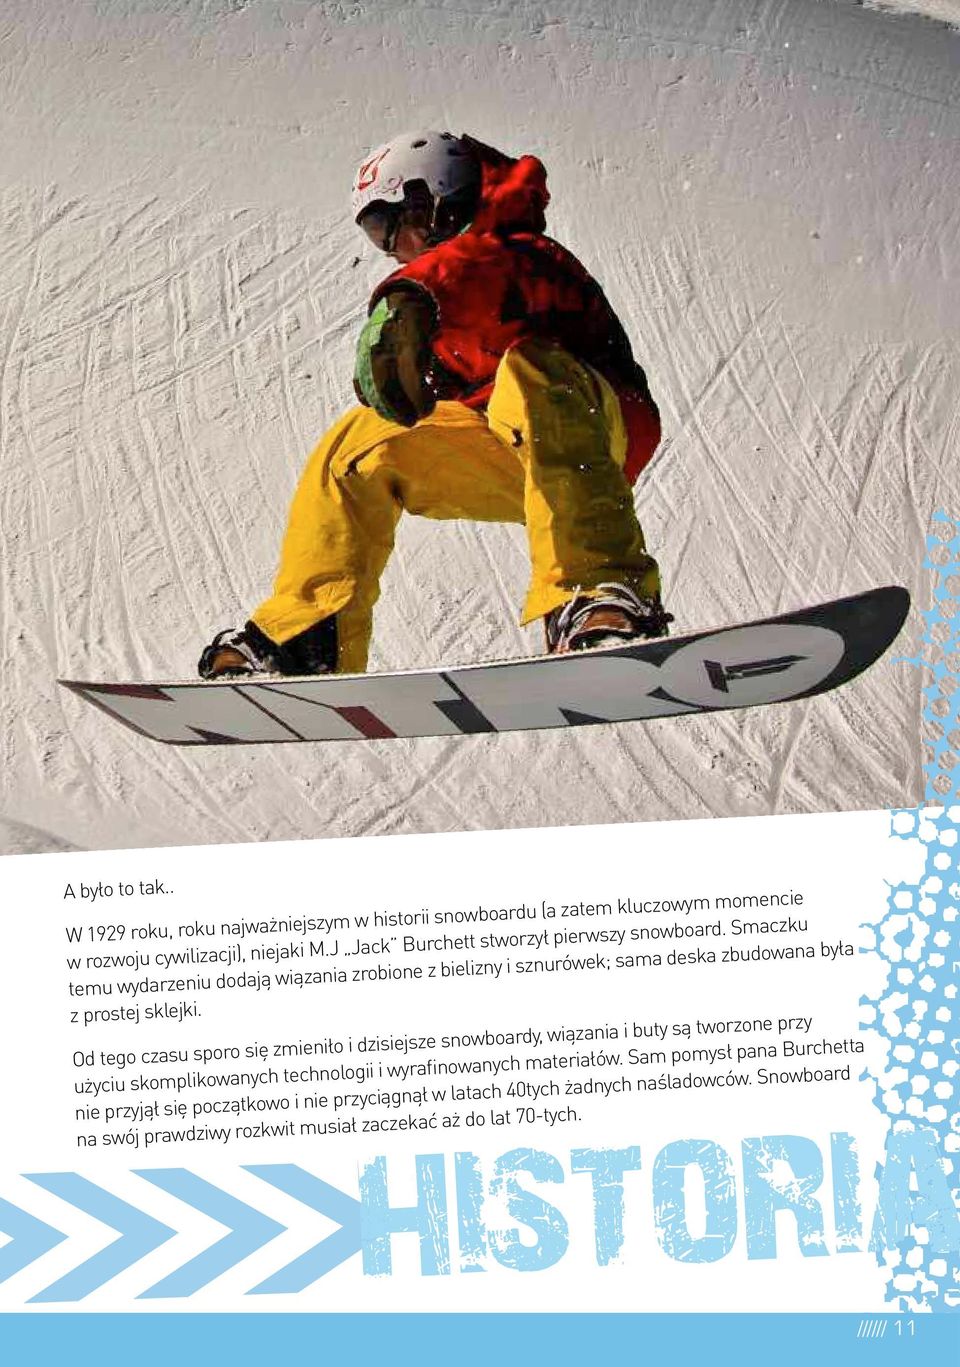 Od tego czasu sporo się zmieniło i dzisiejsze snowboardy, wiązania i buty są tworzone przy użyciu skomplikowanych technologii i wyrainowanych materiałów.